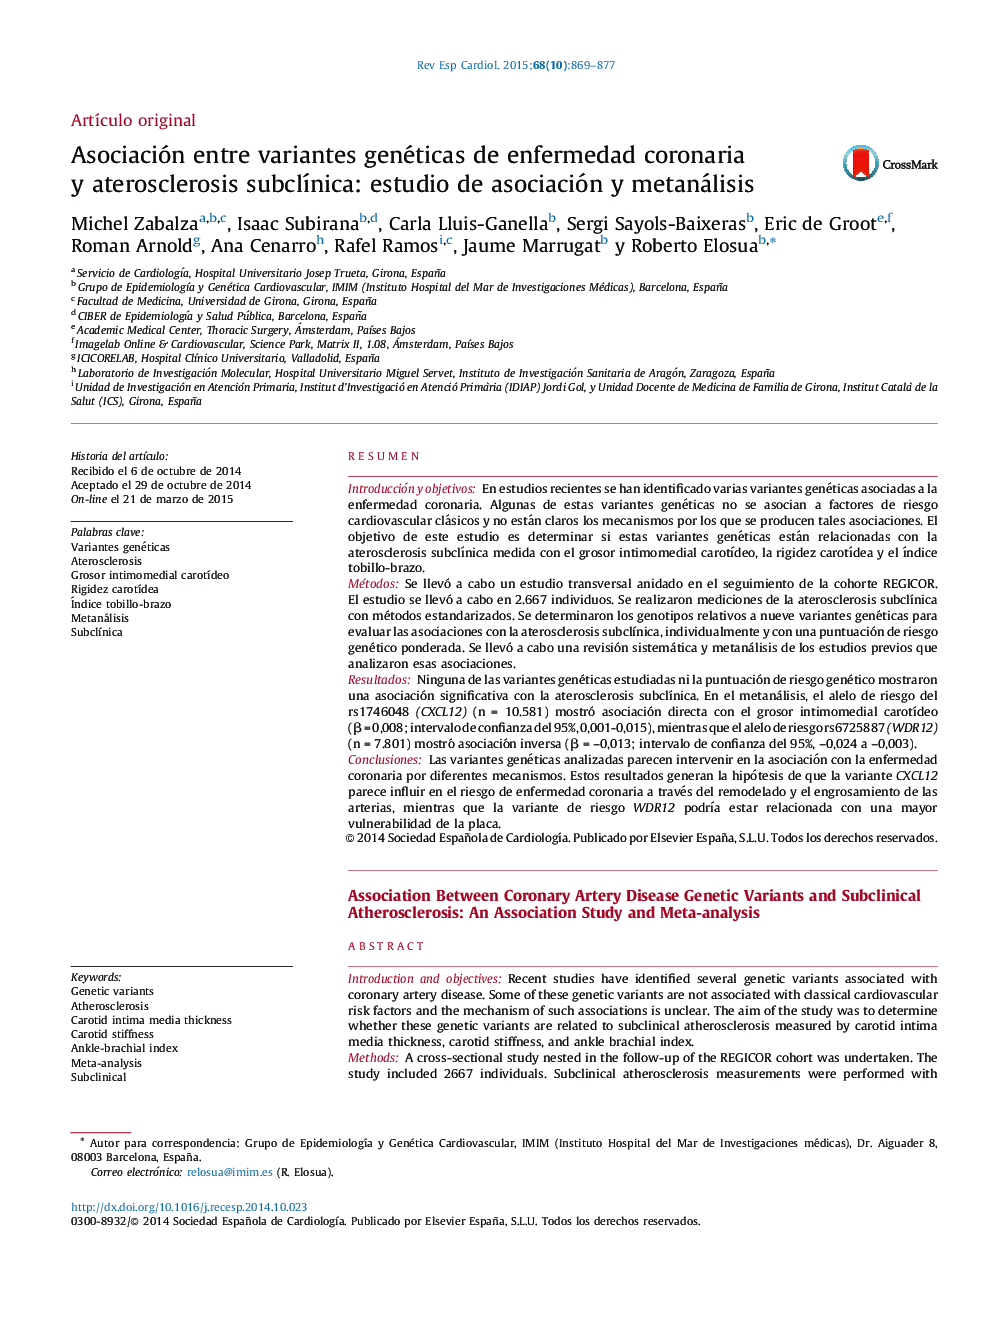 Asociación entre variantes genéticas de enfermedad coronaria y aterosclerosis subclínica: estudio de asociación y metanálisis